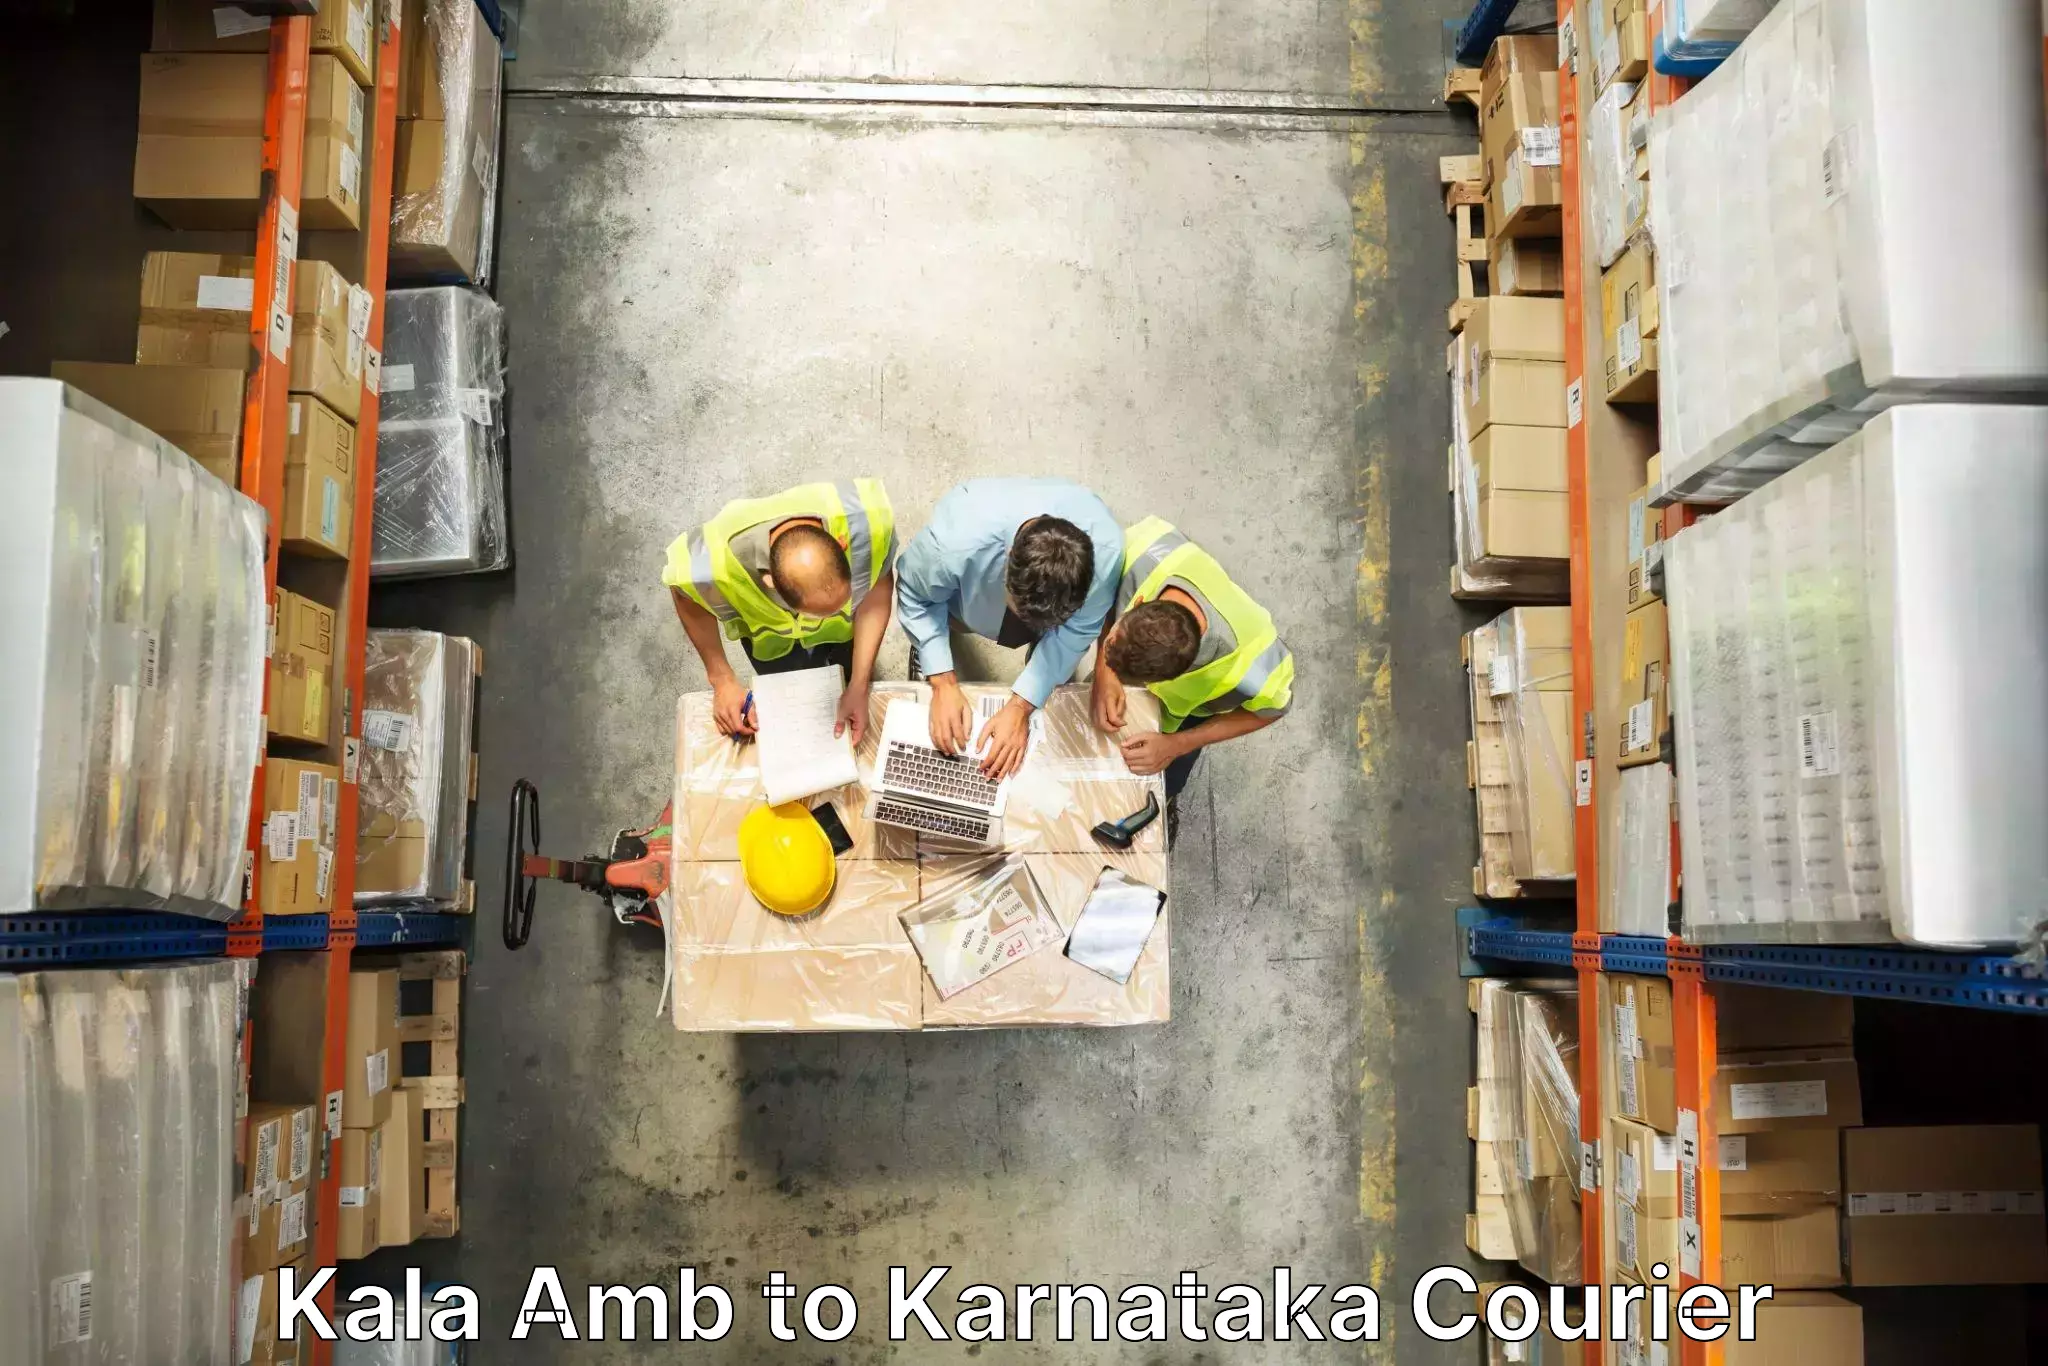 Specialized moving company Kala Amb to Karnataka